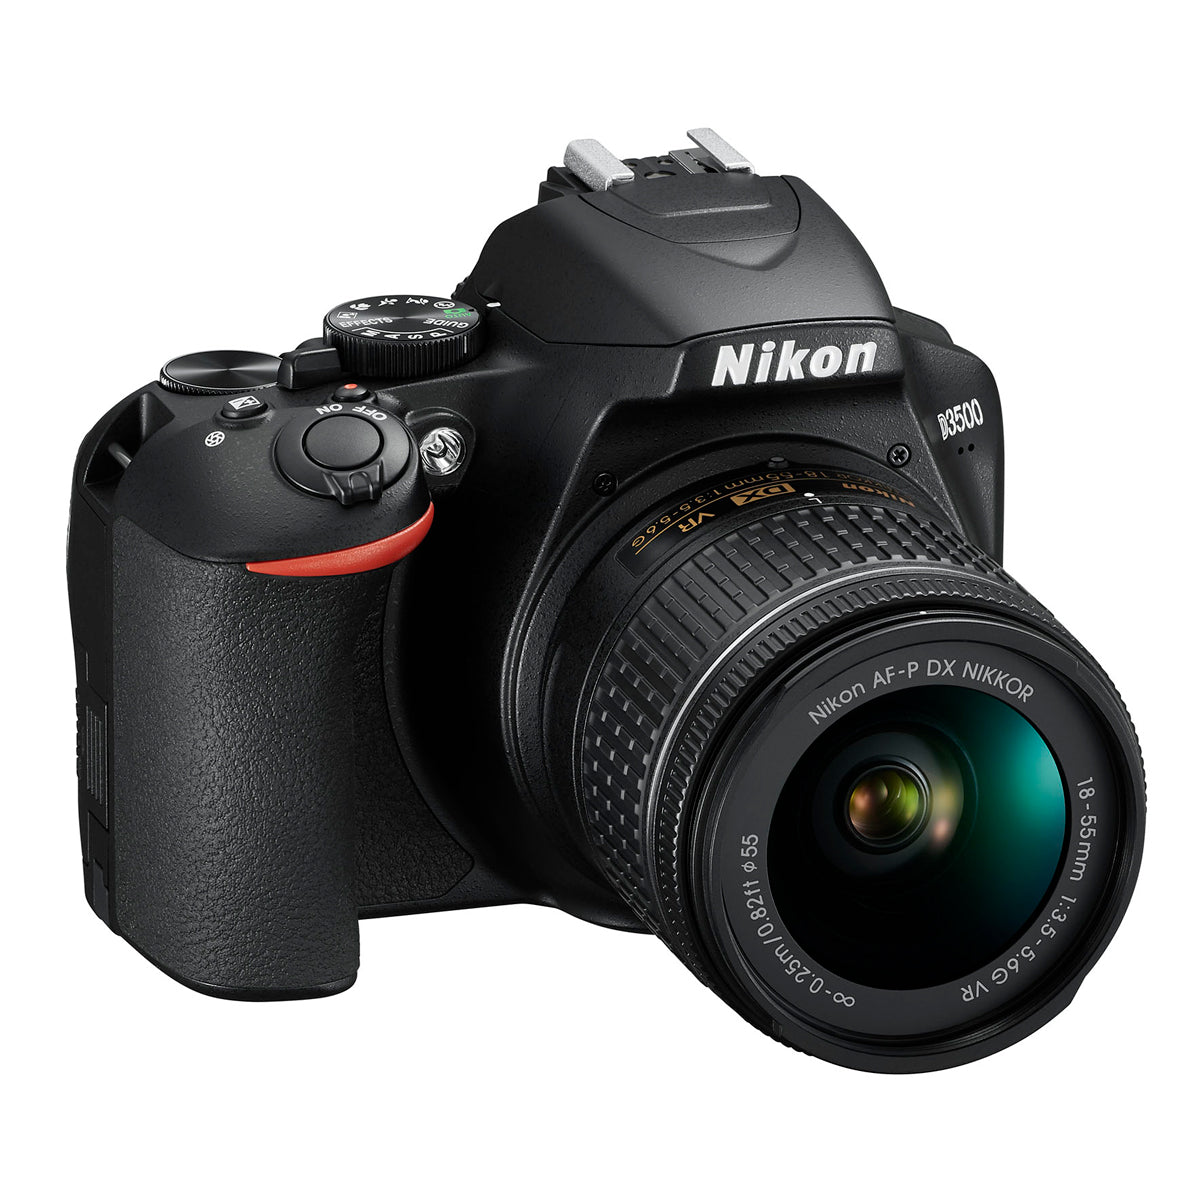 Nikon D3500 DX-format Digital SLR Camera w/ AF-P 18-55mm DX G VR Zoom Lens Black *Open Box*